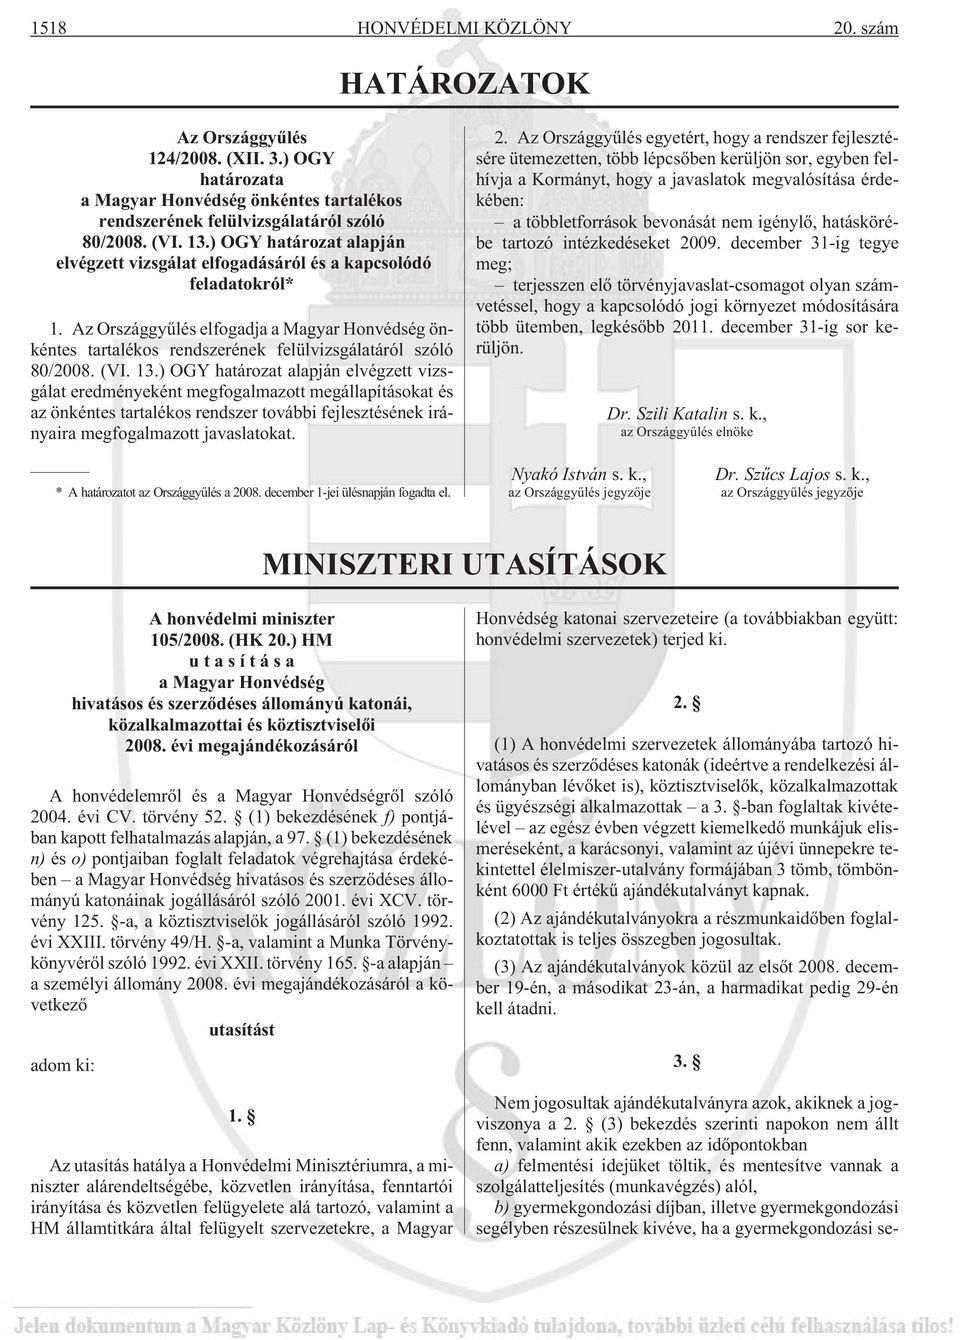 Az Országgyûlés elfogadja a Magyar Honvédség önkéntes tartalékos rendszerének felülvizsgálatáról szóló 80/2008. (VI. 13.